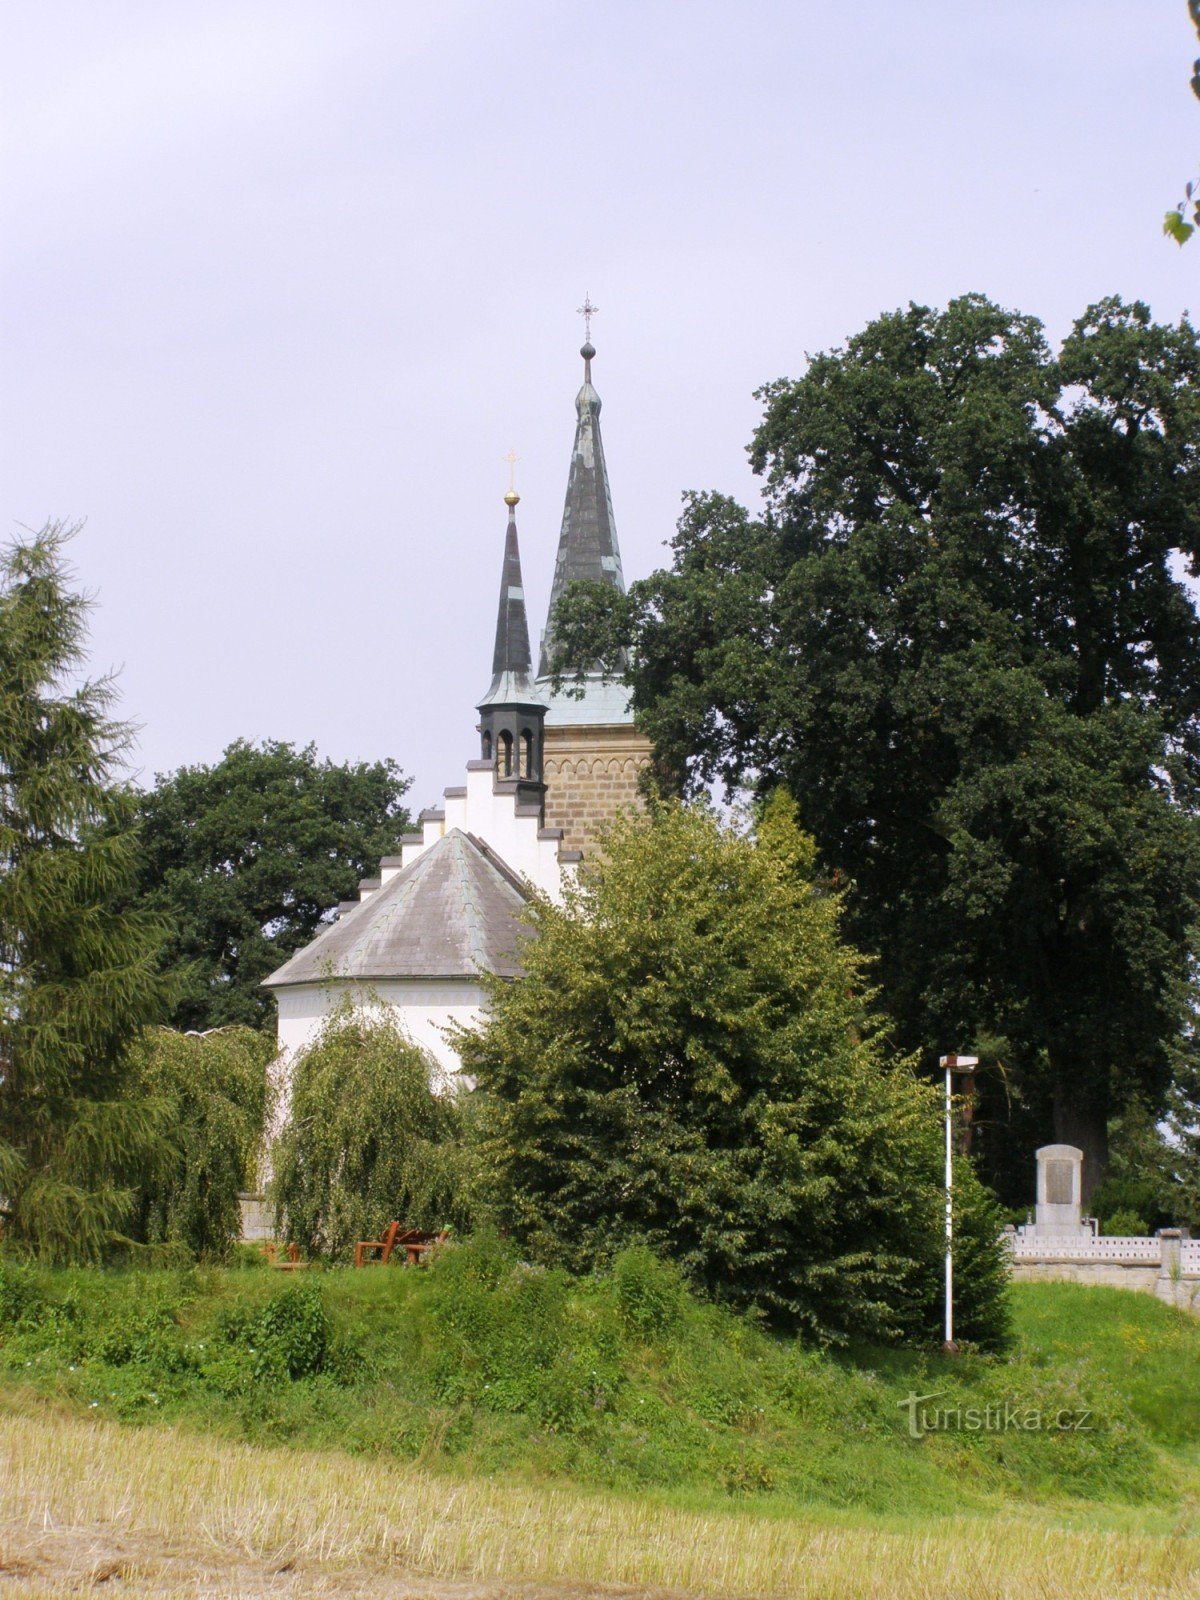 Karlovice - Pyhän Nikolauksen kirkko George